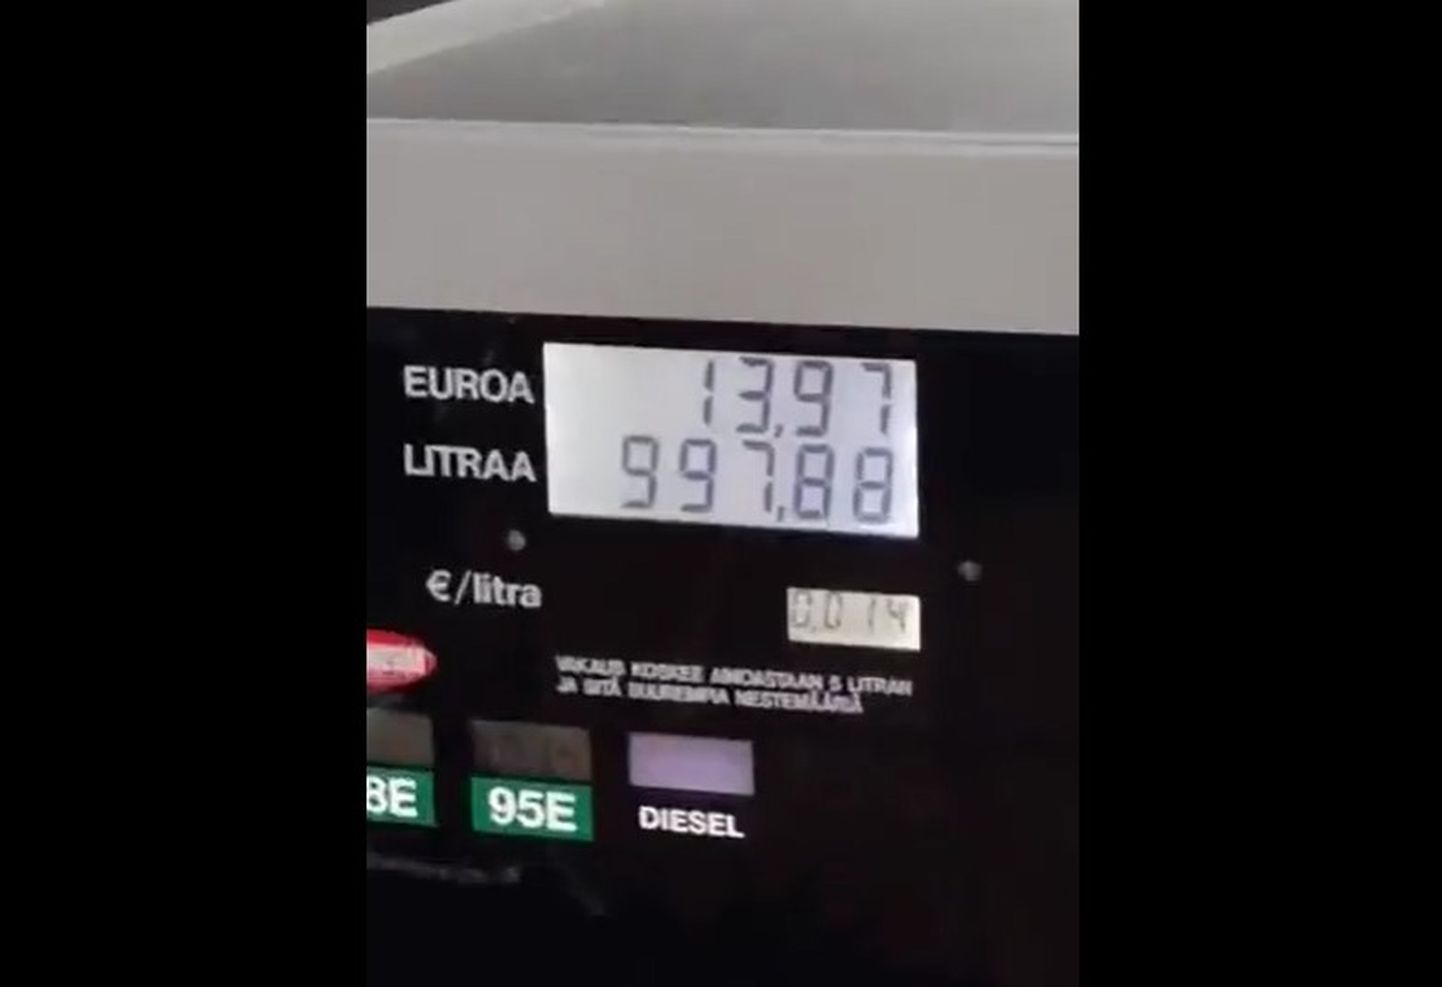 Soomes sai kolmest tanklast tehnilise vea tõttu pea olematu hinnaga bensiini